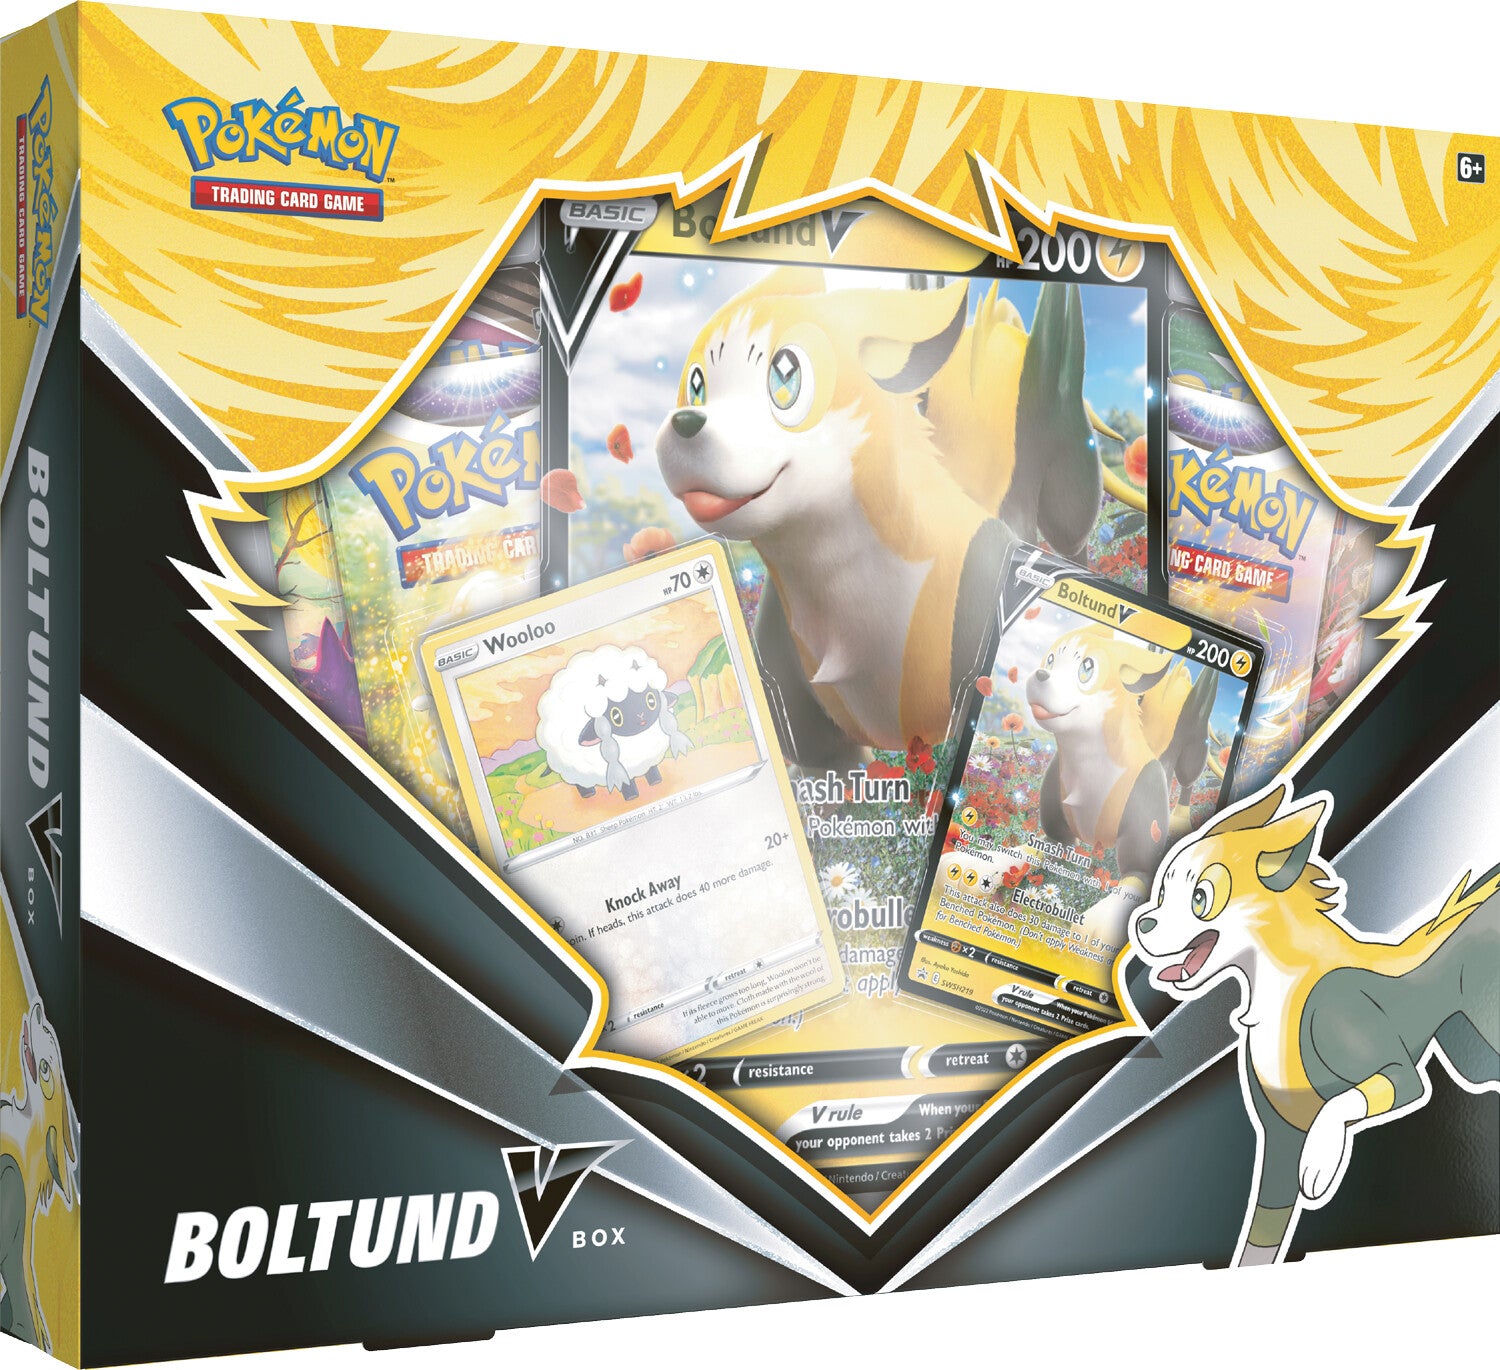 Boltund V Box | Devastation Store